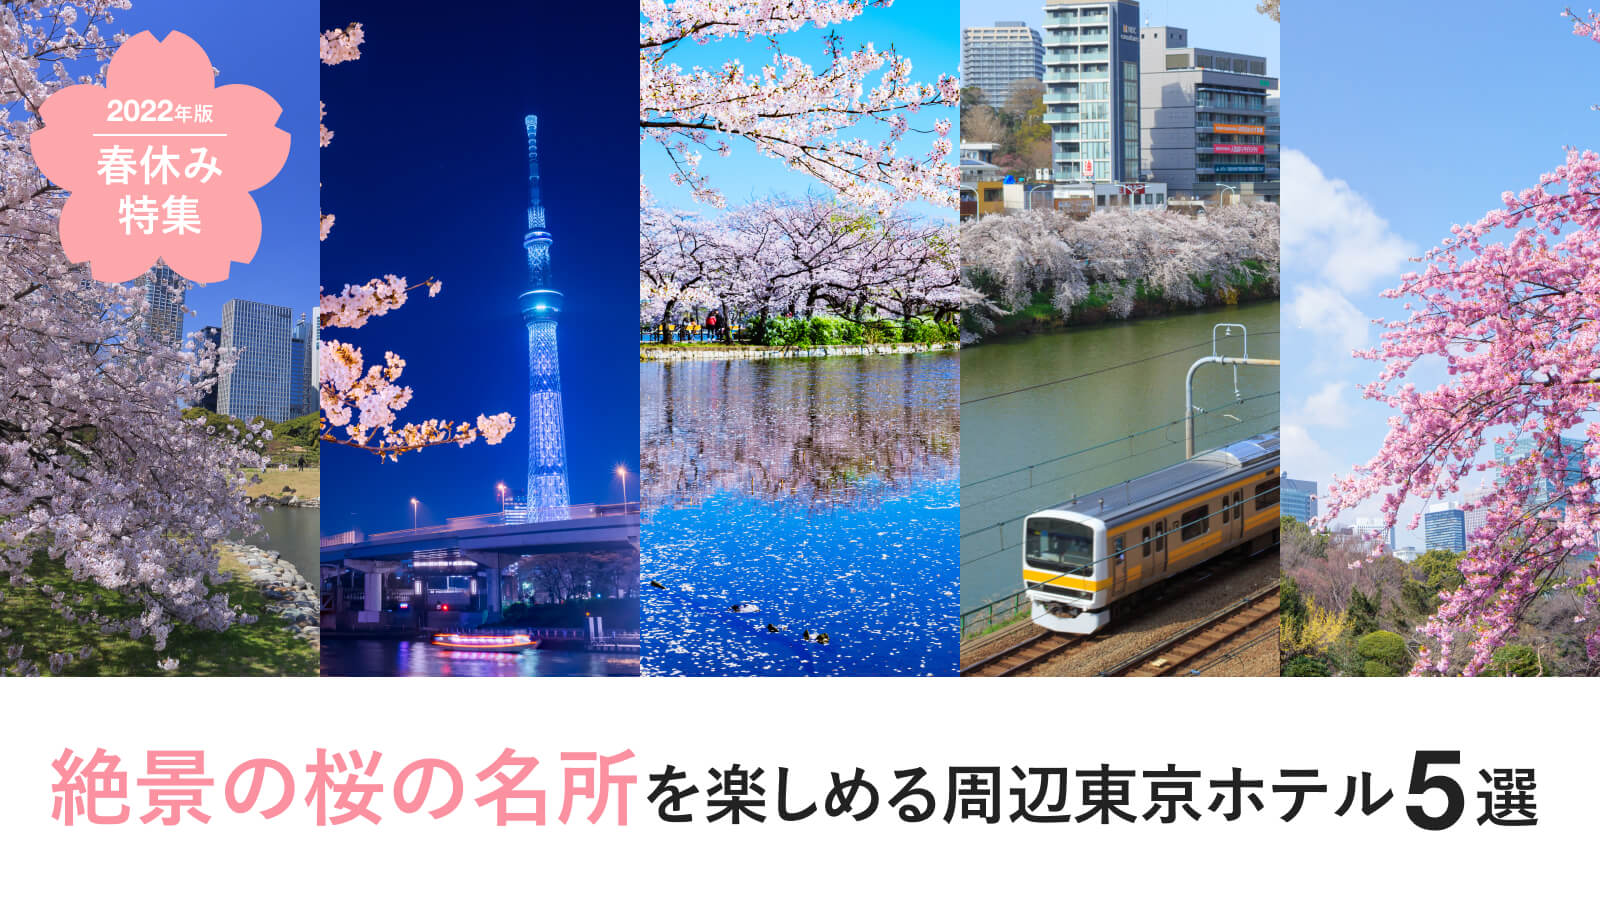 春休み特集 絶景の桜の名所を楽しめる周辺東京ホテル 5選 22年